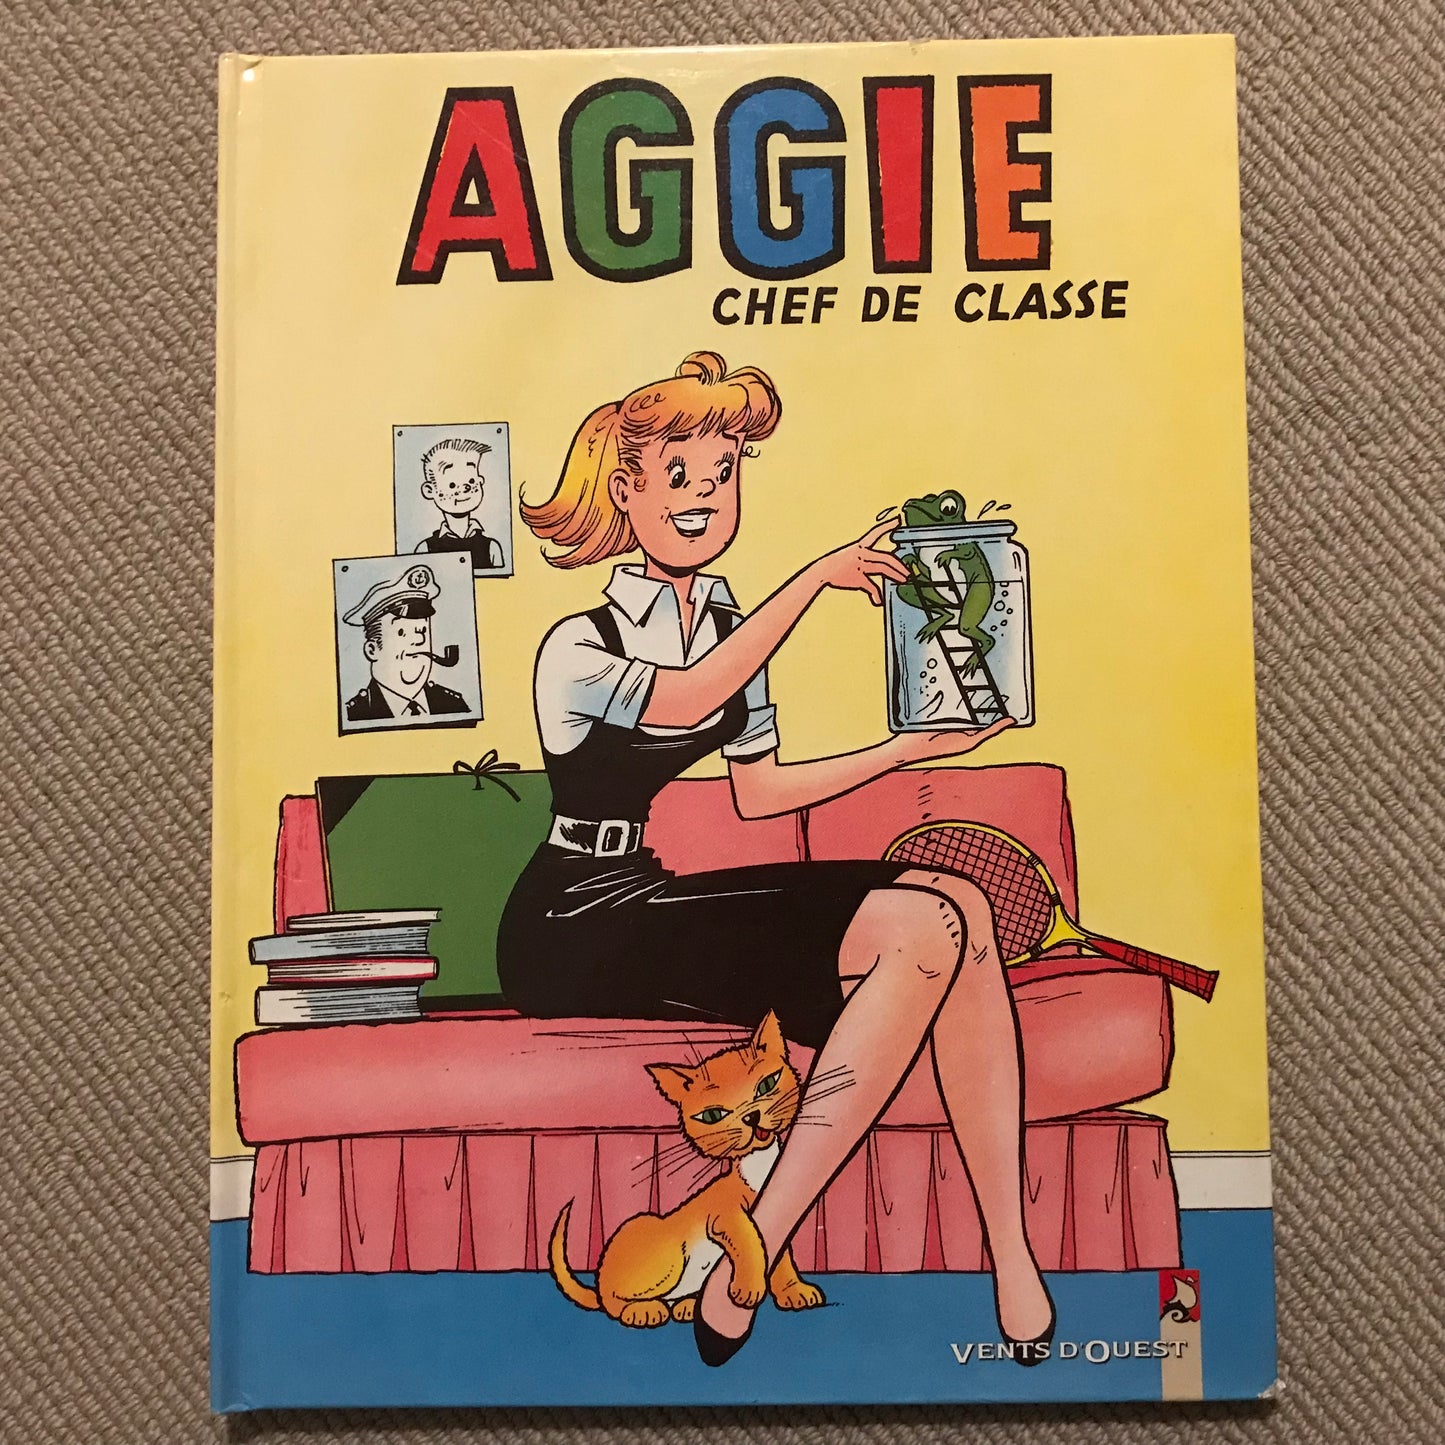 Aggie chef de classe - Al G.